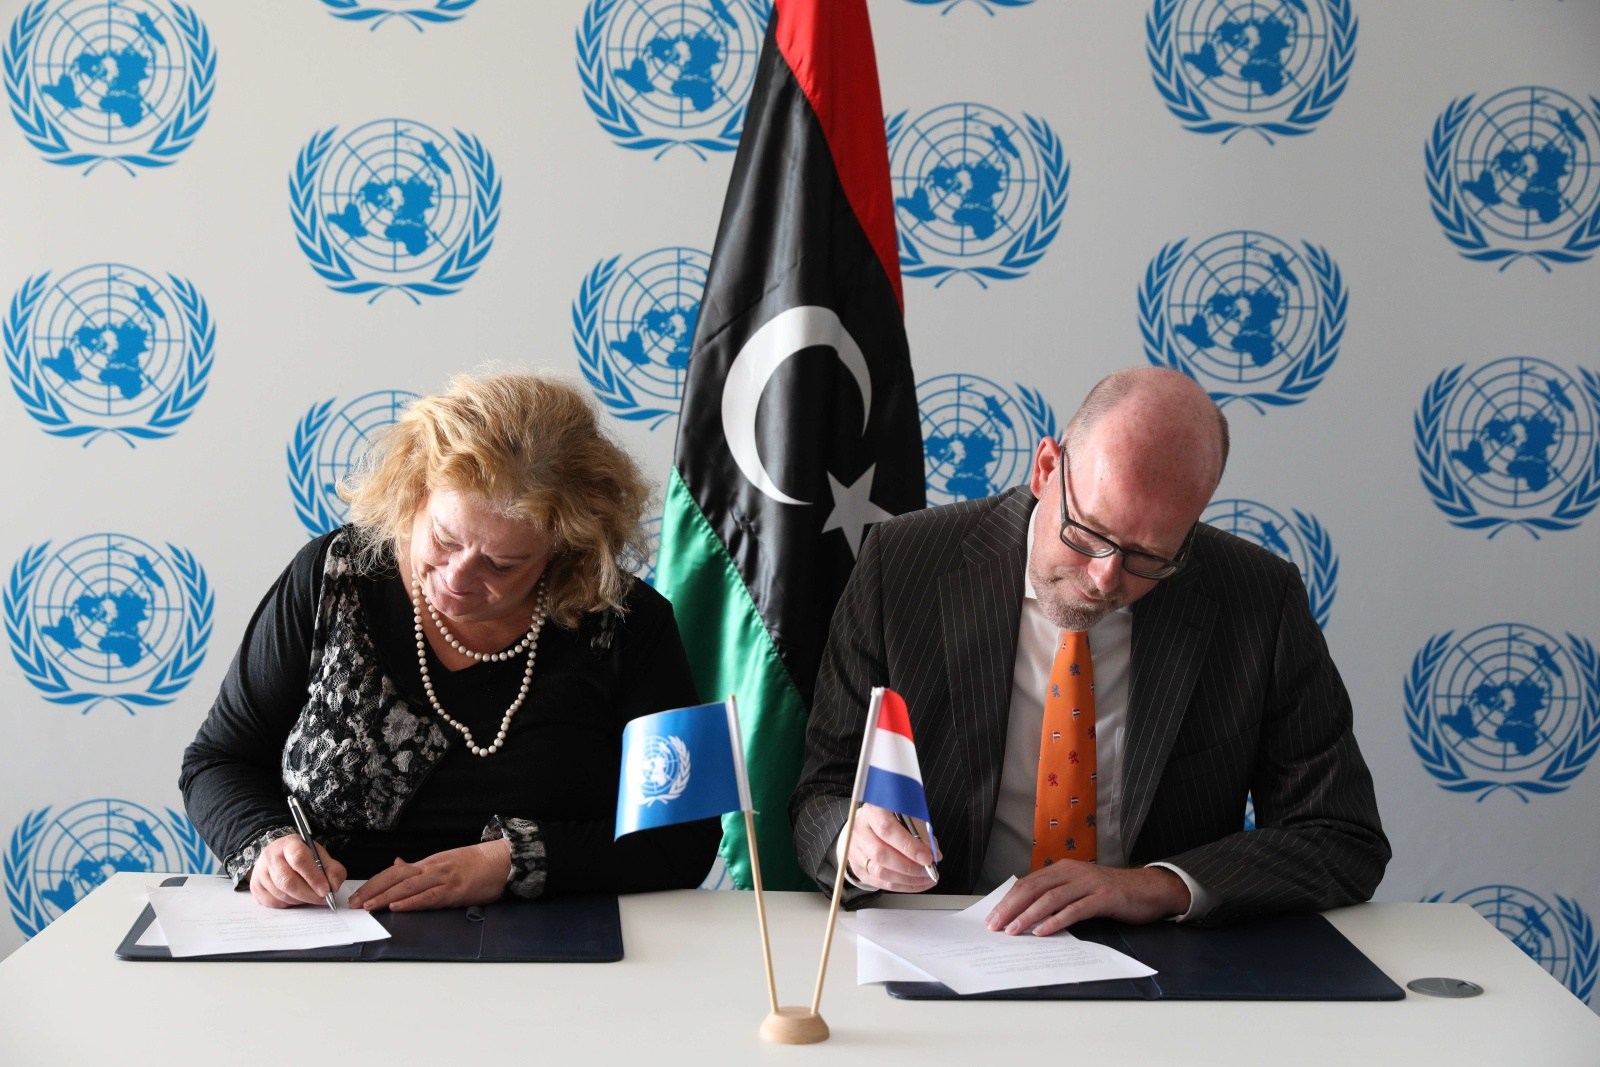 برنامج الأمم المتحدة الإنمائي يبدأ التحضير للانتخابات الليبية